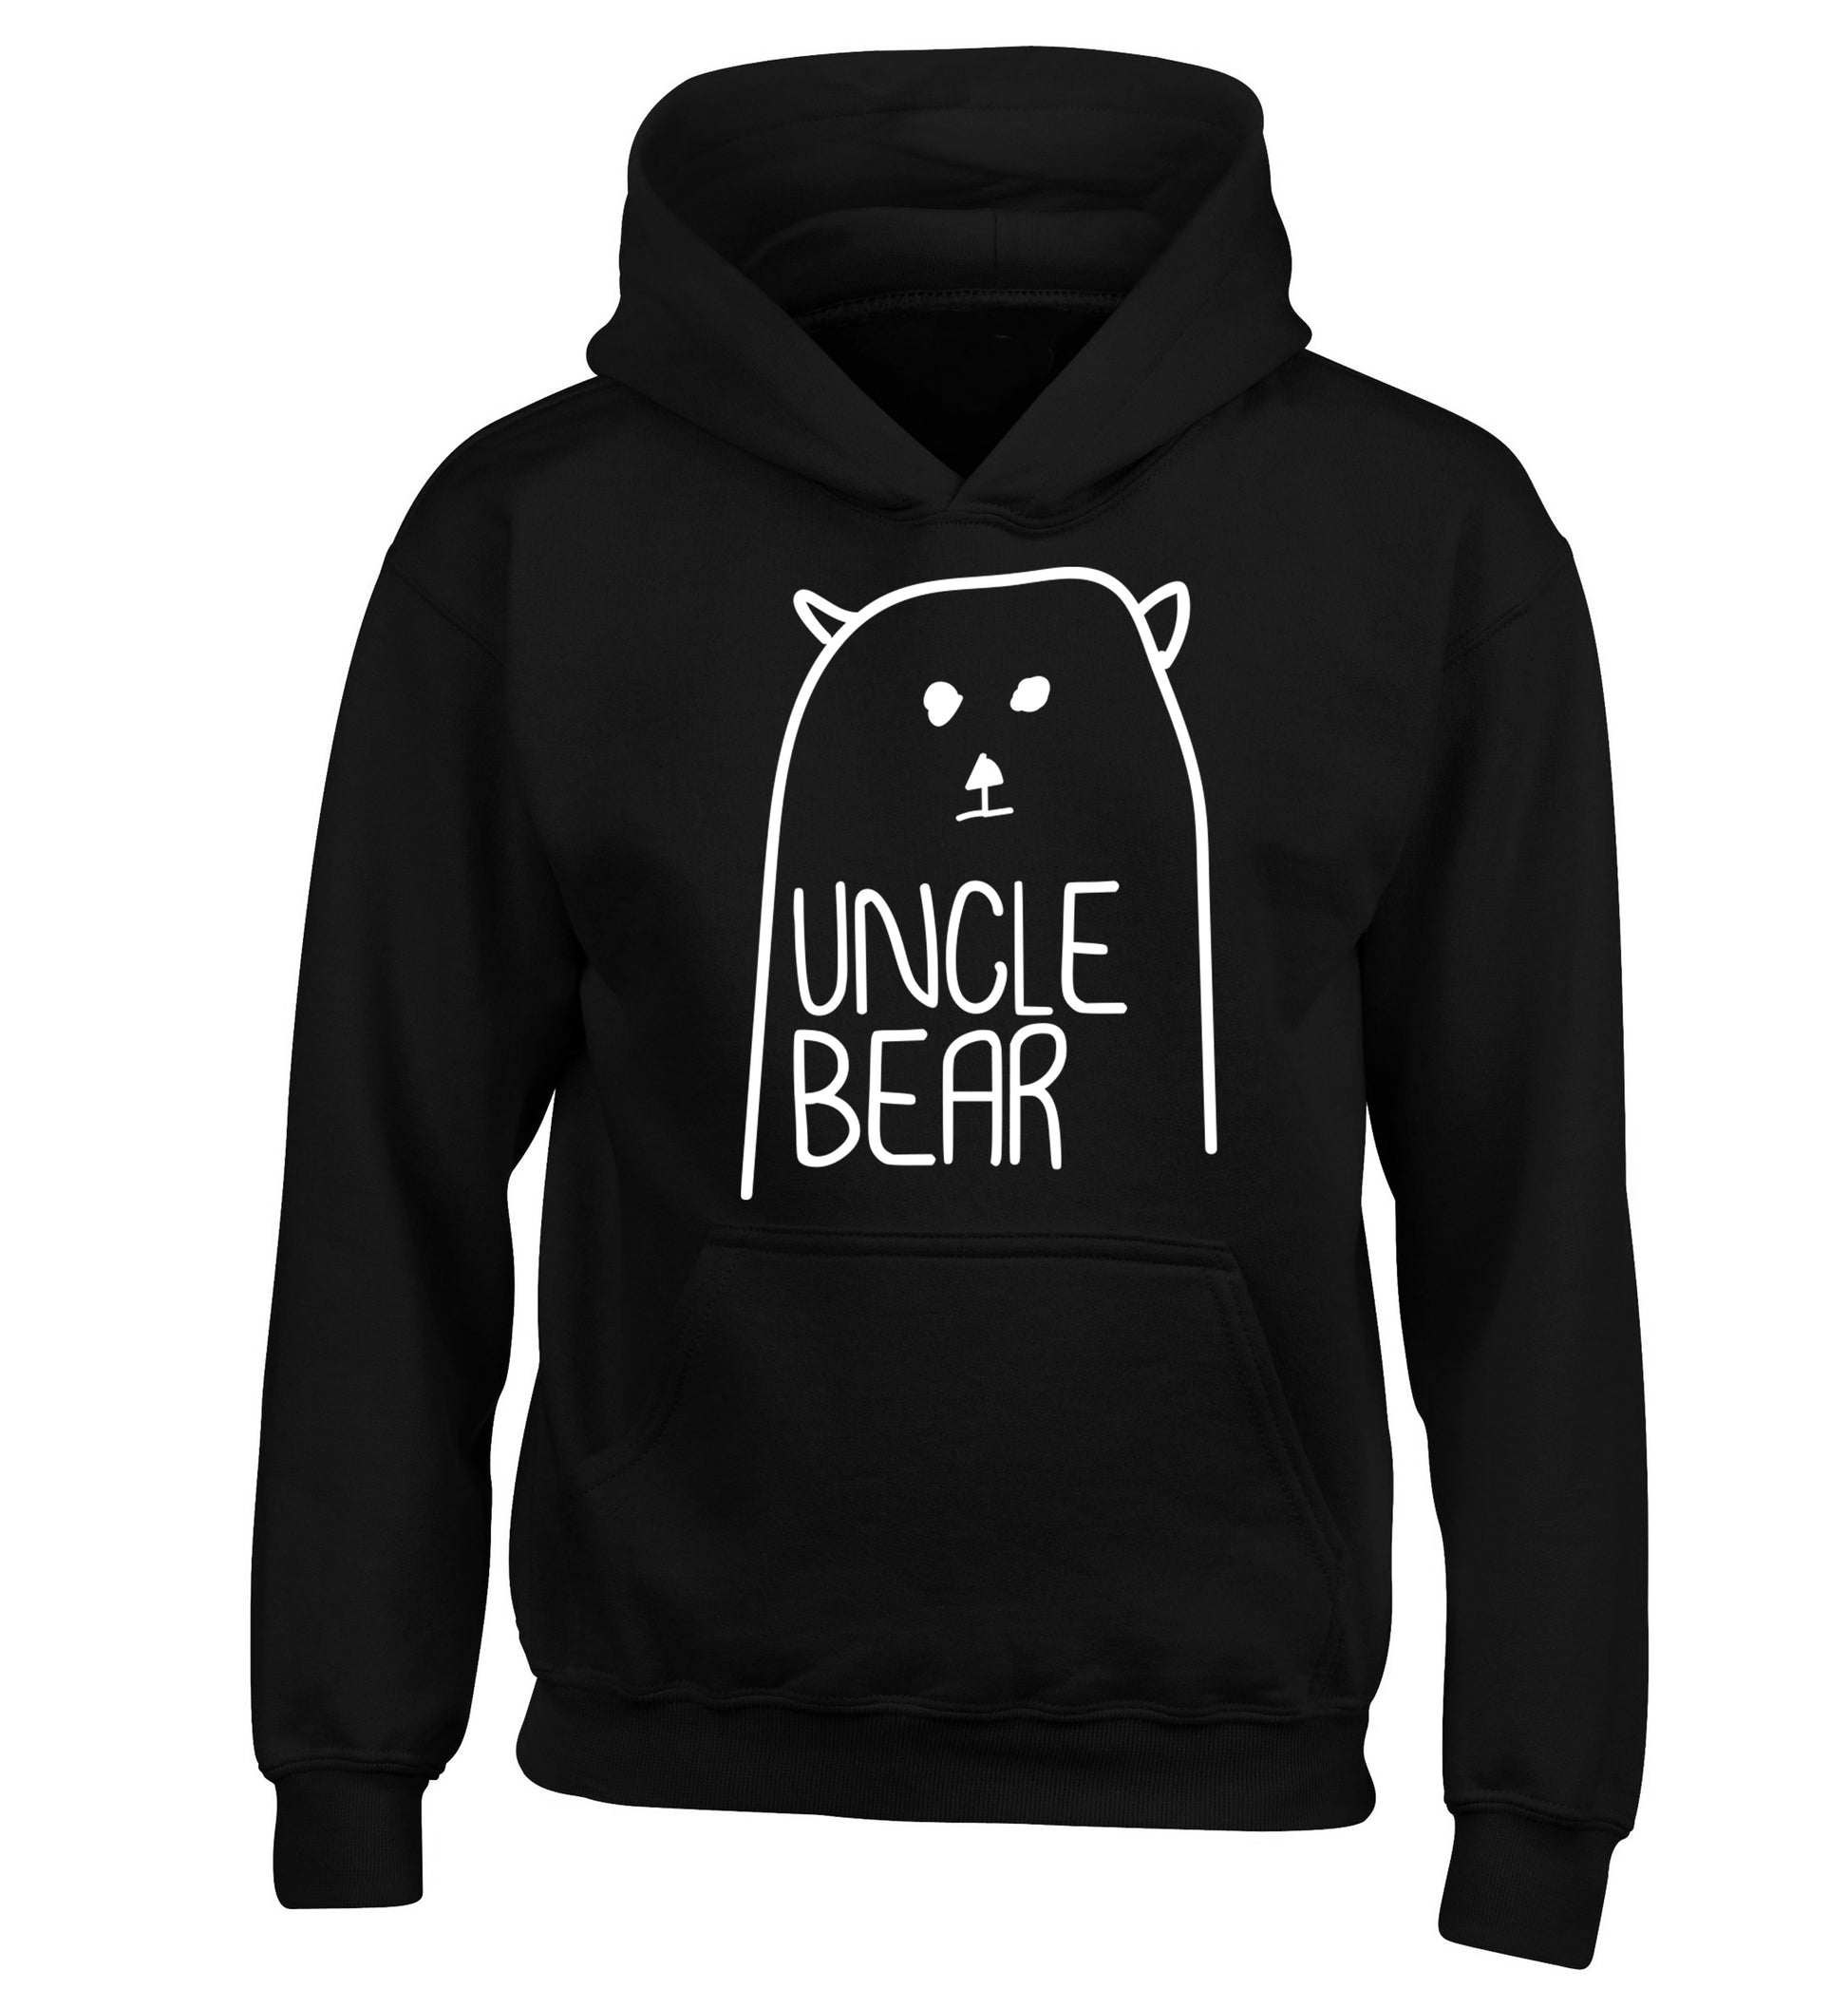 Uncle bear children's black hoodie 12-13 Years